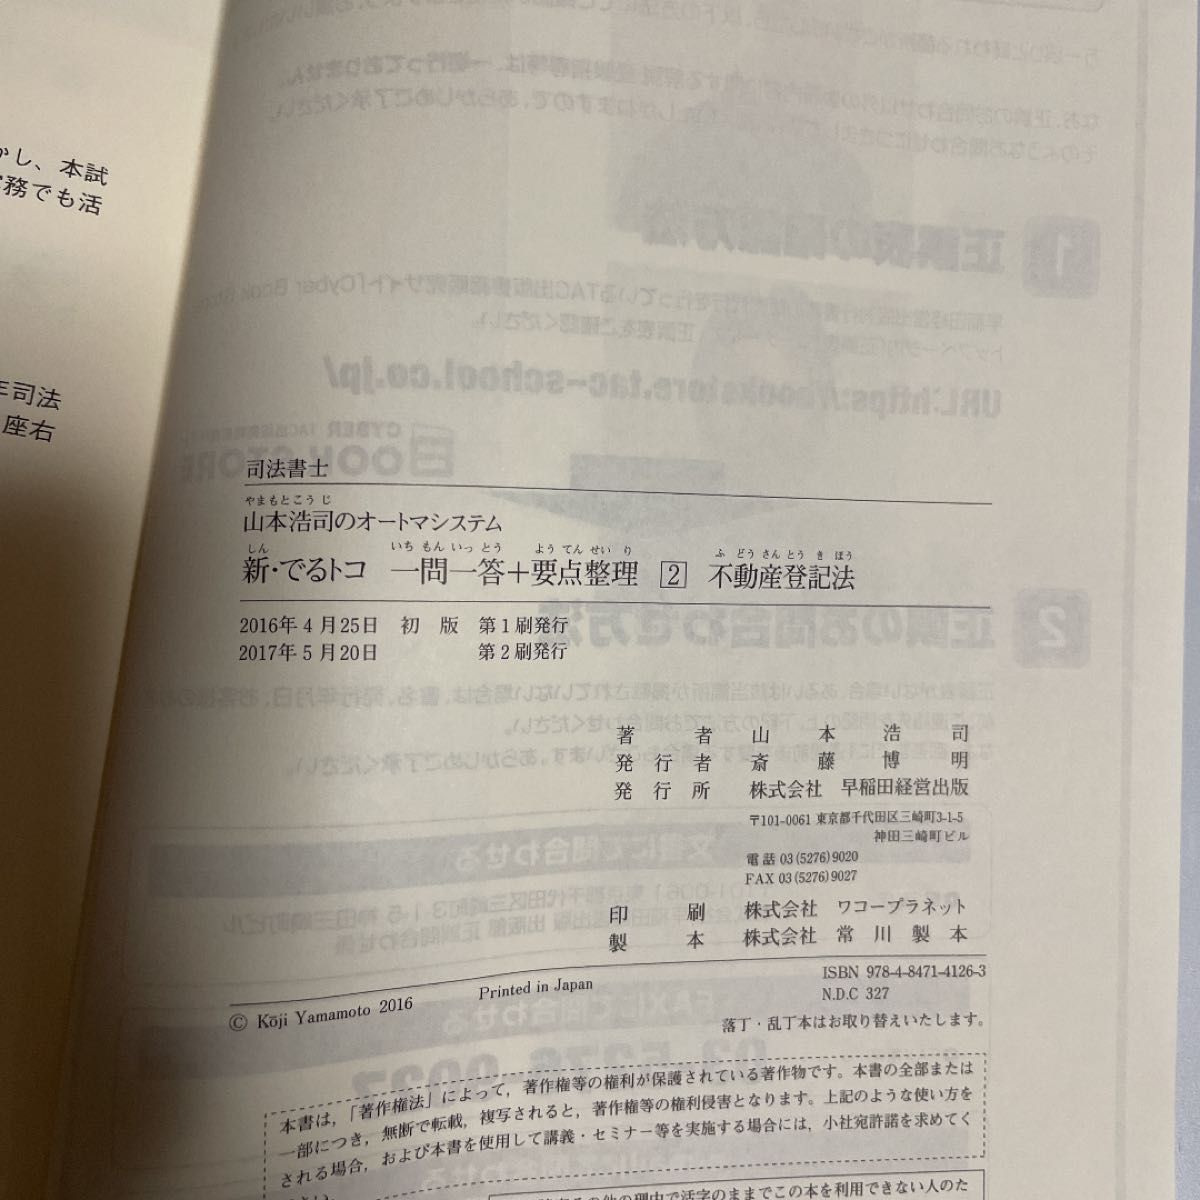 山本浩司のオートマシステム 新・でるトコ一問一答+要点整理〈2〉不動産登記法